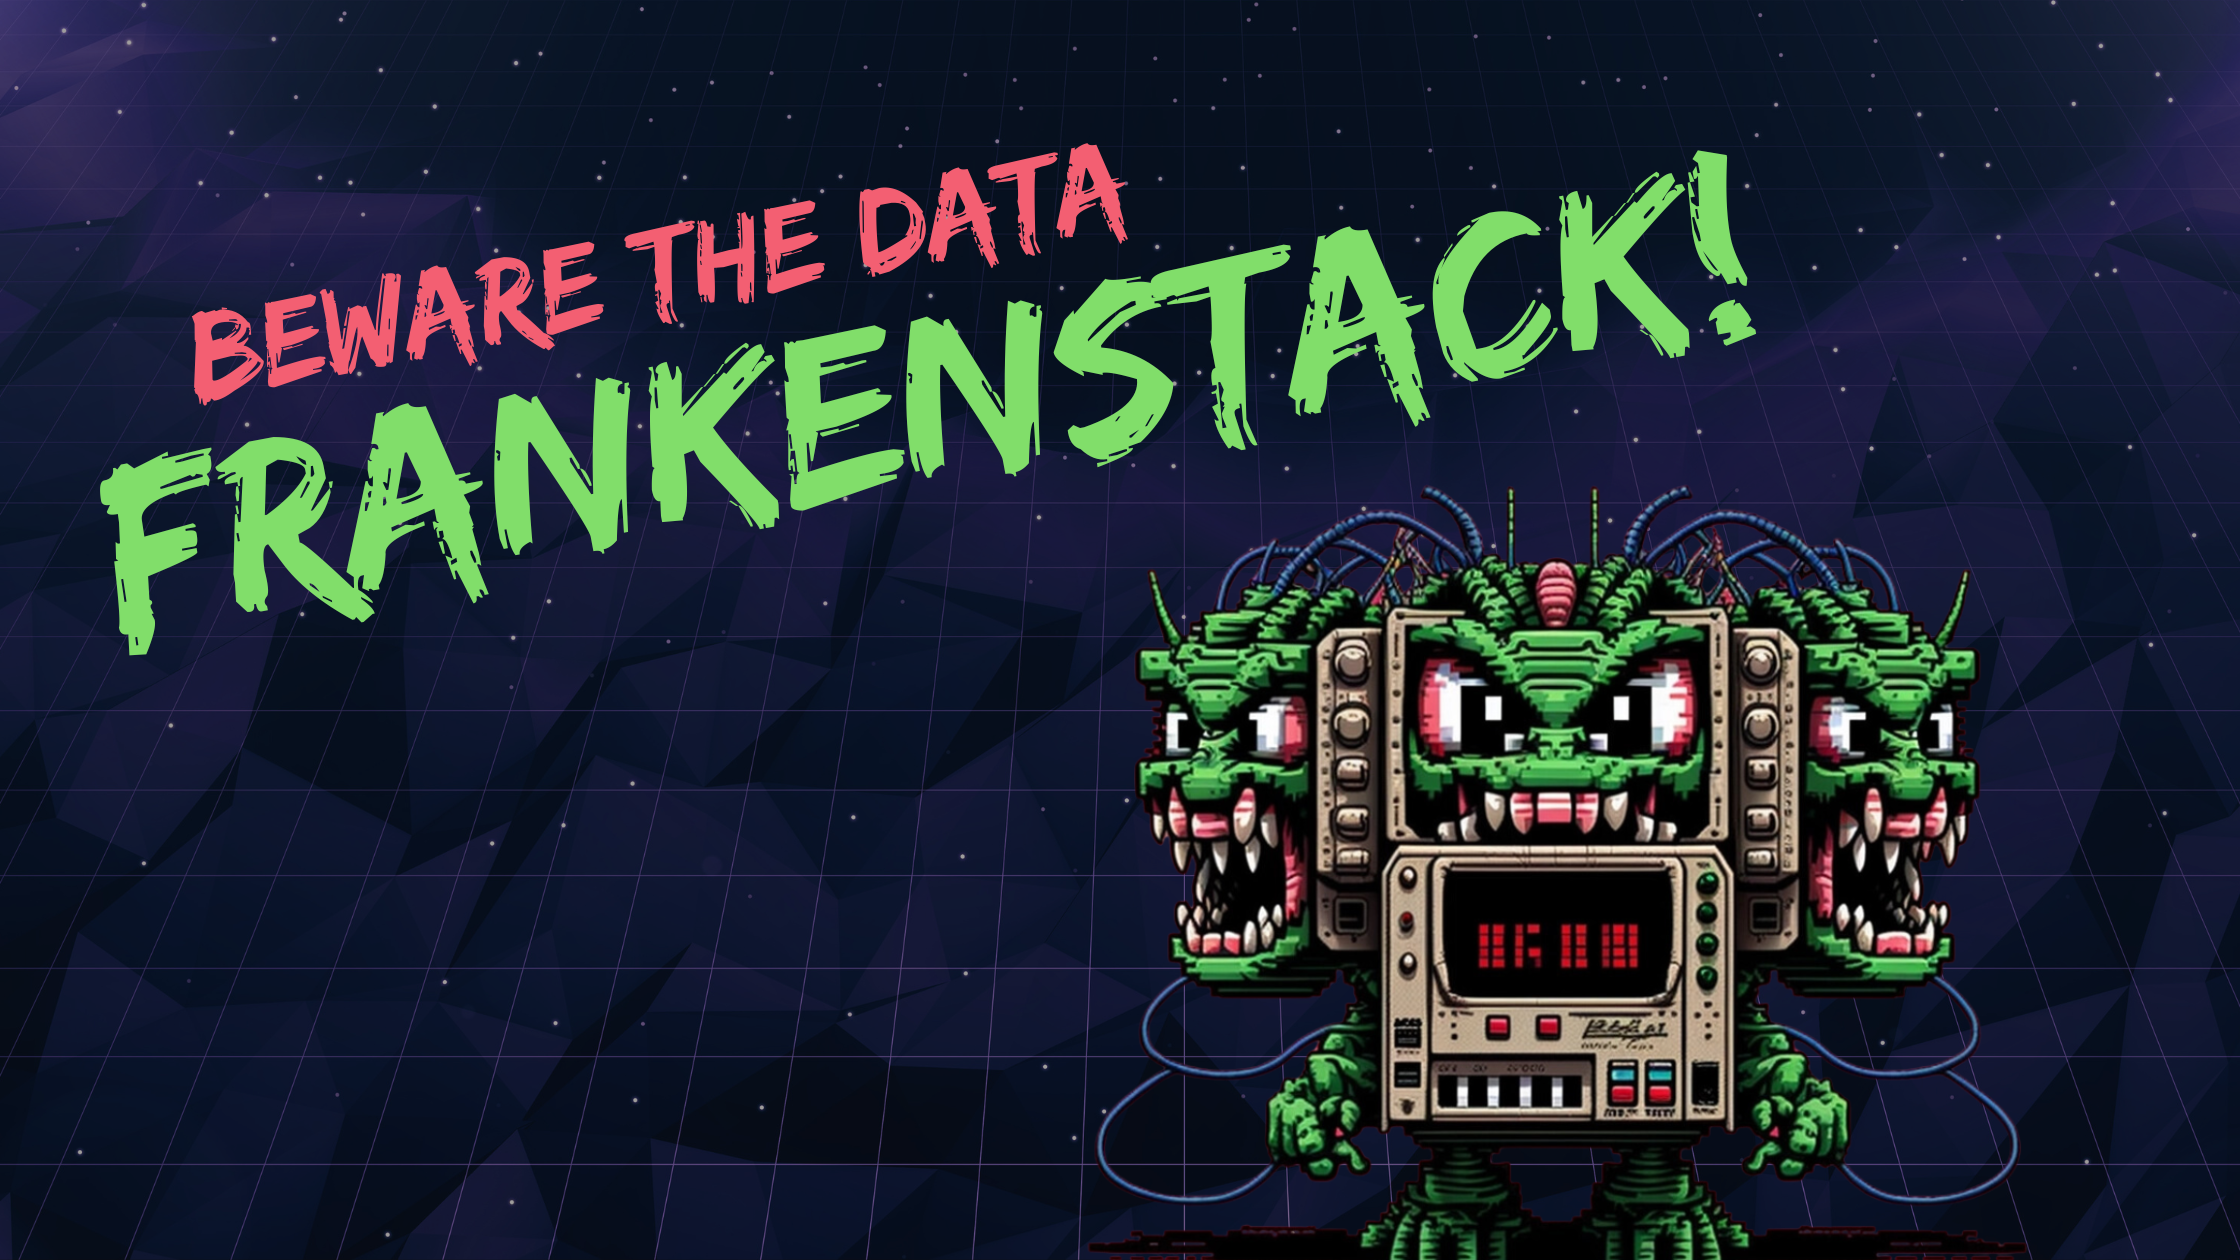 Data Frankenstack